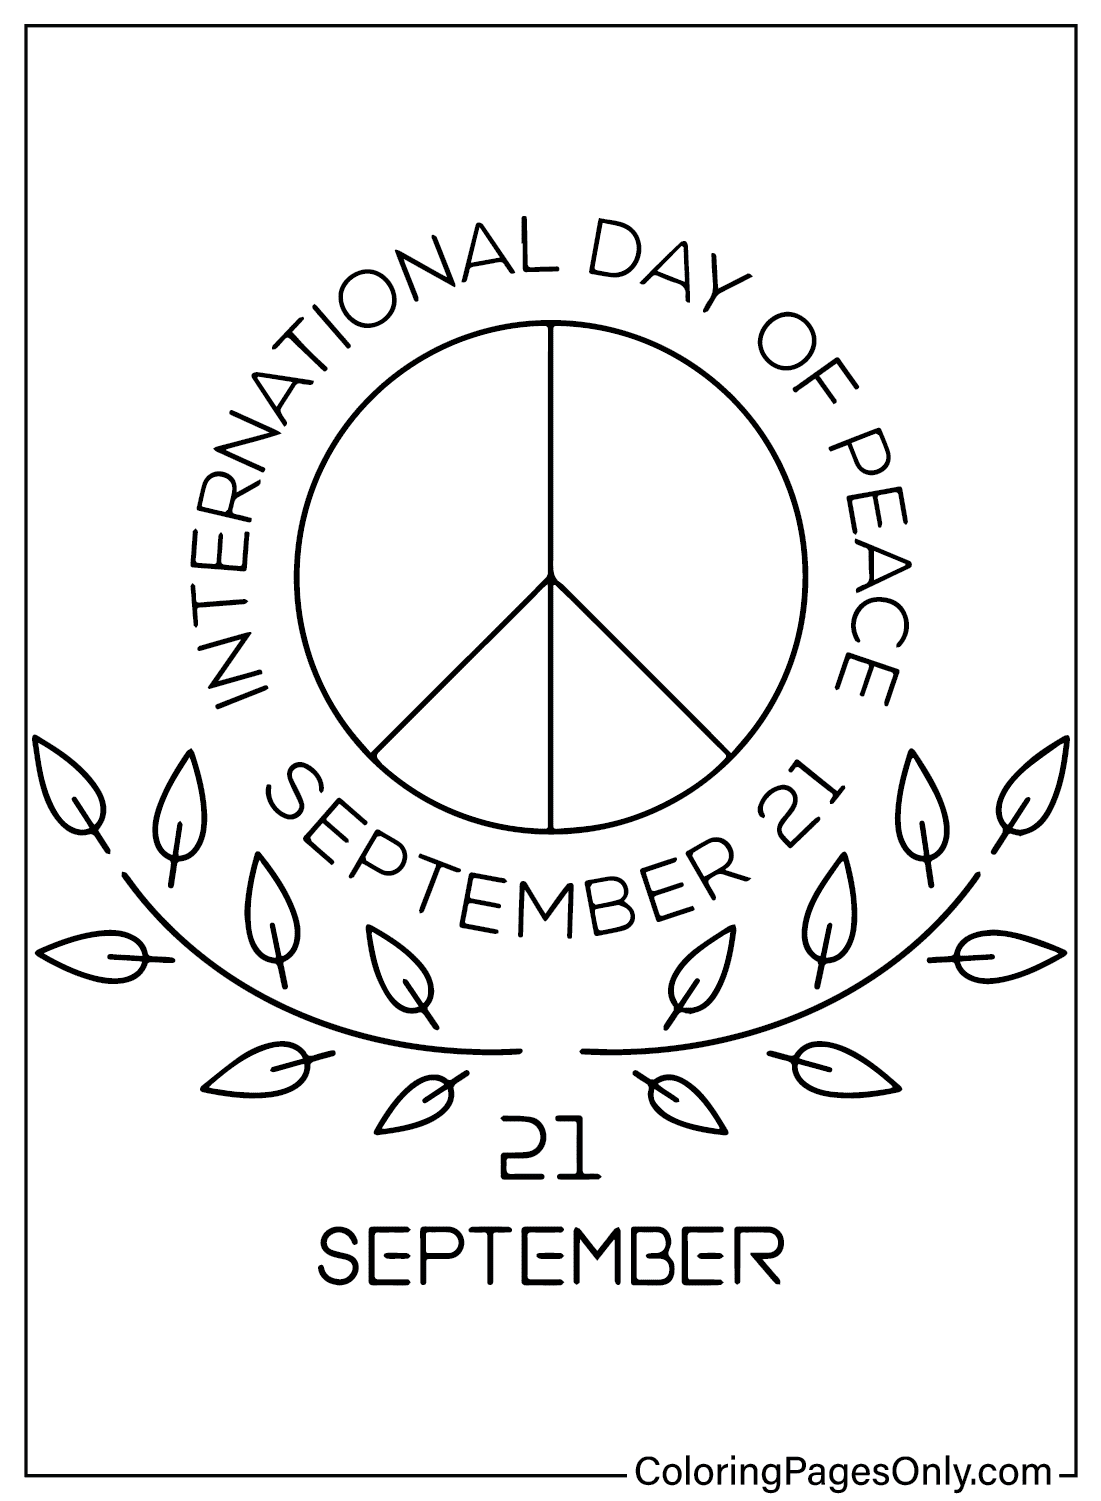 Imagens do Dia Internacional da Paz para colorir do Dia Internacional da Paz